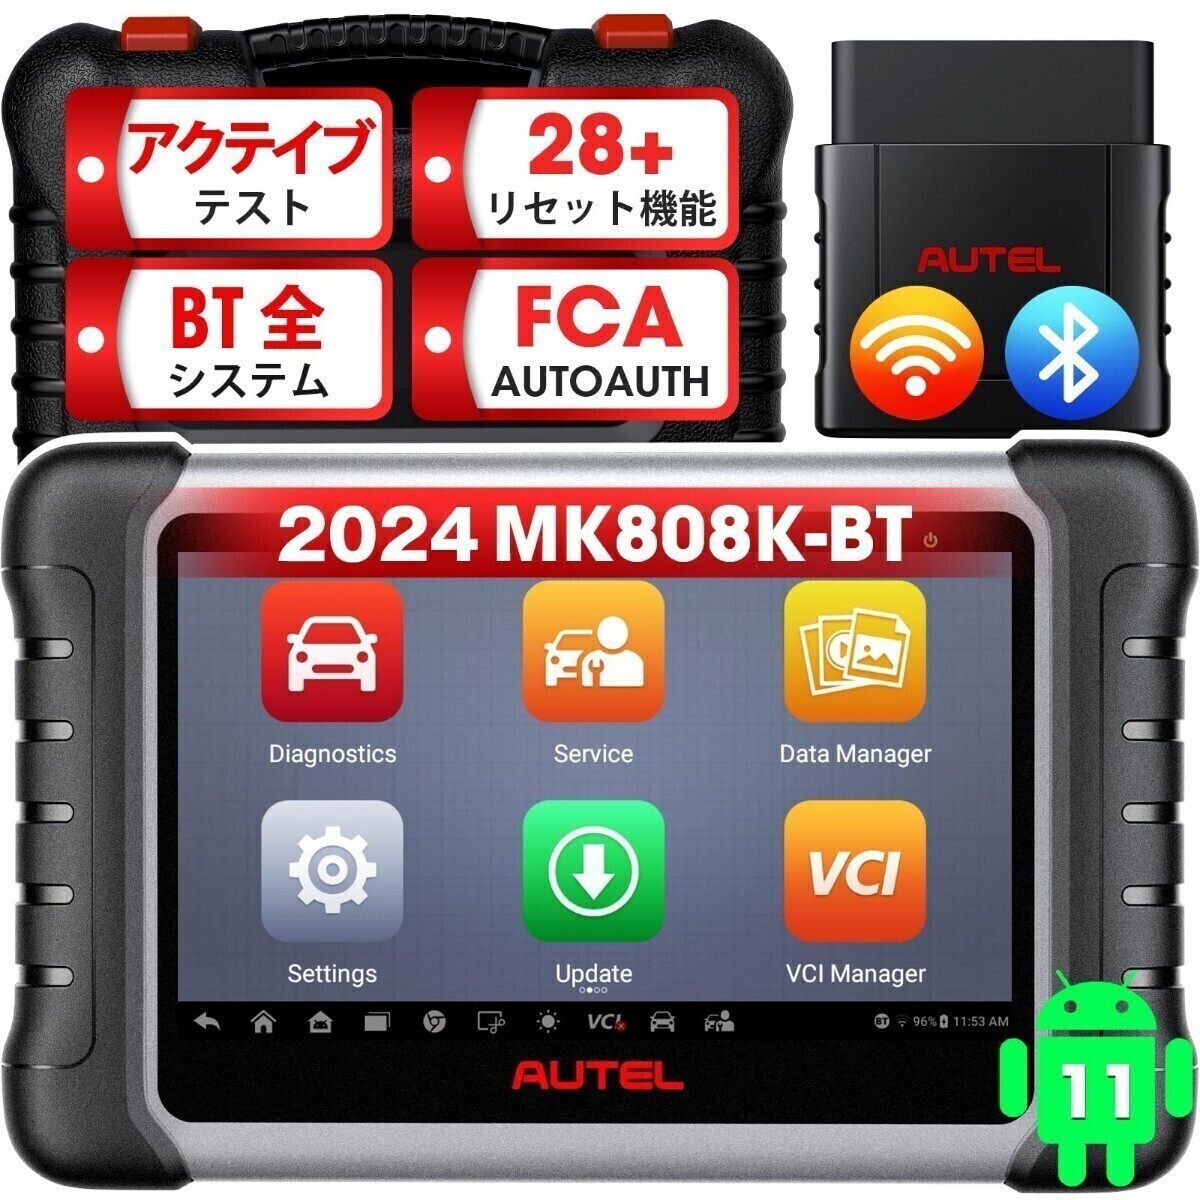 新品・日本語化済 最新版 Autel MK808K-BT OBD2 診断機 輸入車 国産車 軽自動車 ハイブリッド スキャンツール アクティブテスト DPF再生 _画像1